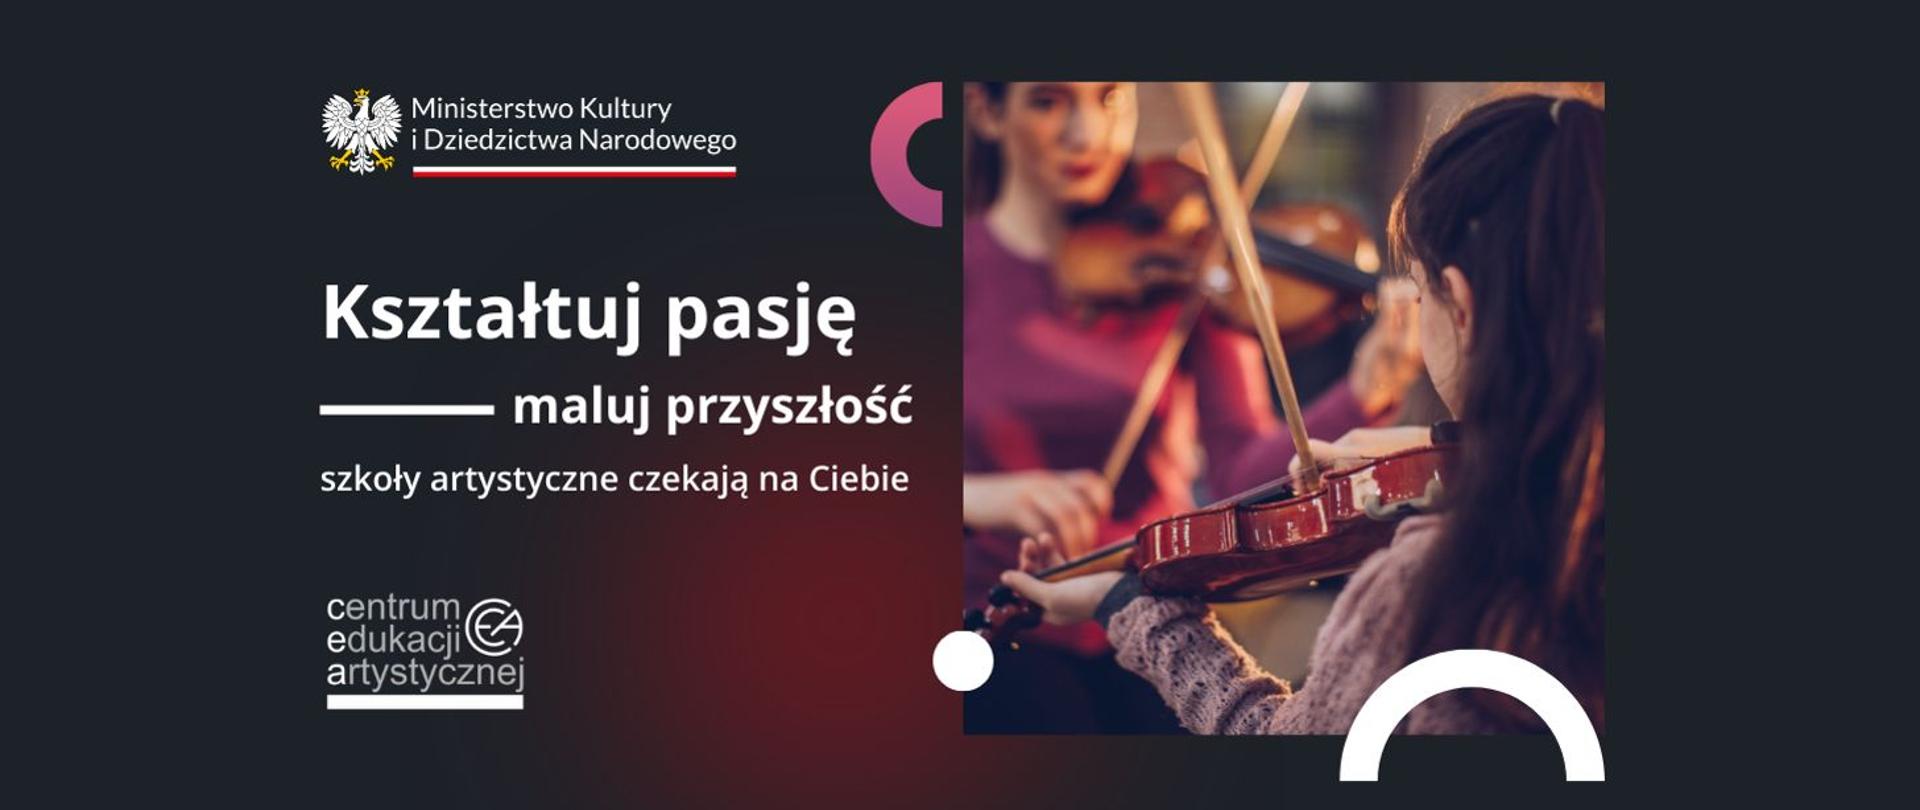 Zdjęcie przedstawia banner reklamujący rekrutację do szkół artystycznych. Na zdjęciu z prawej strony dziecko i nauczyciel grający na skrzypcach.